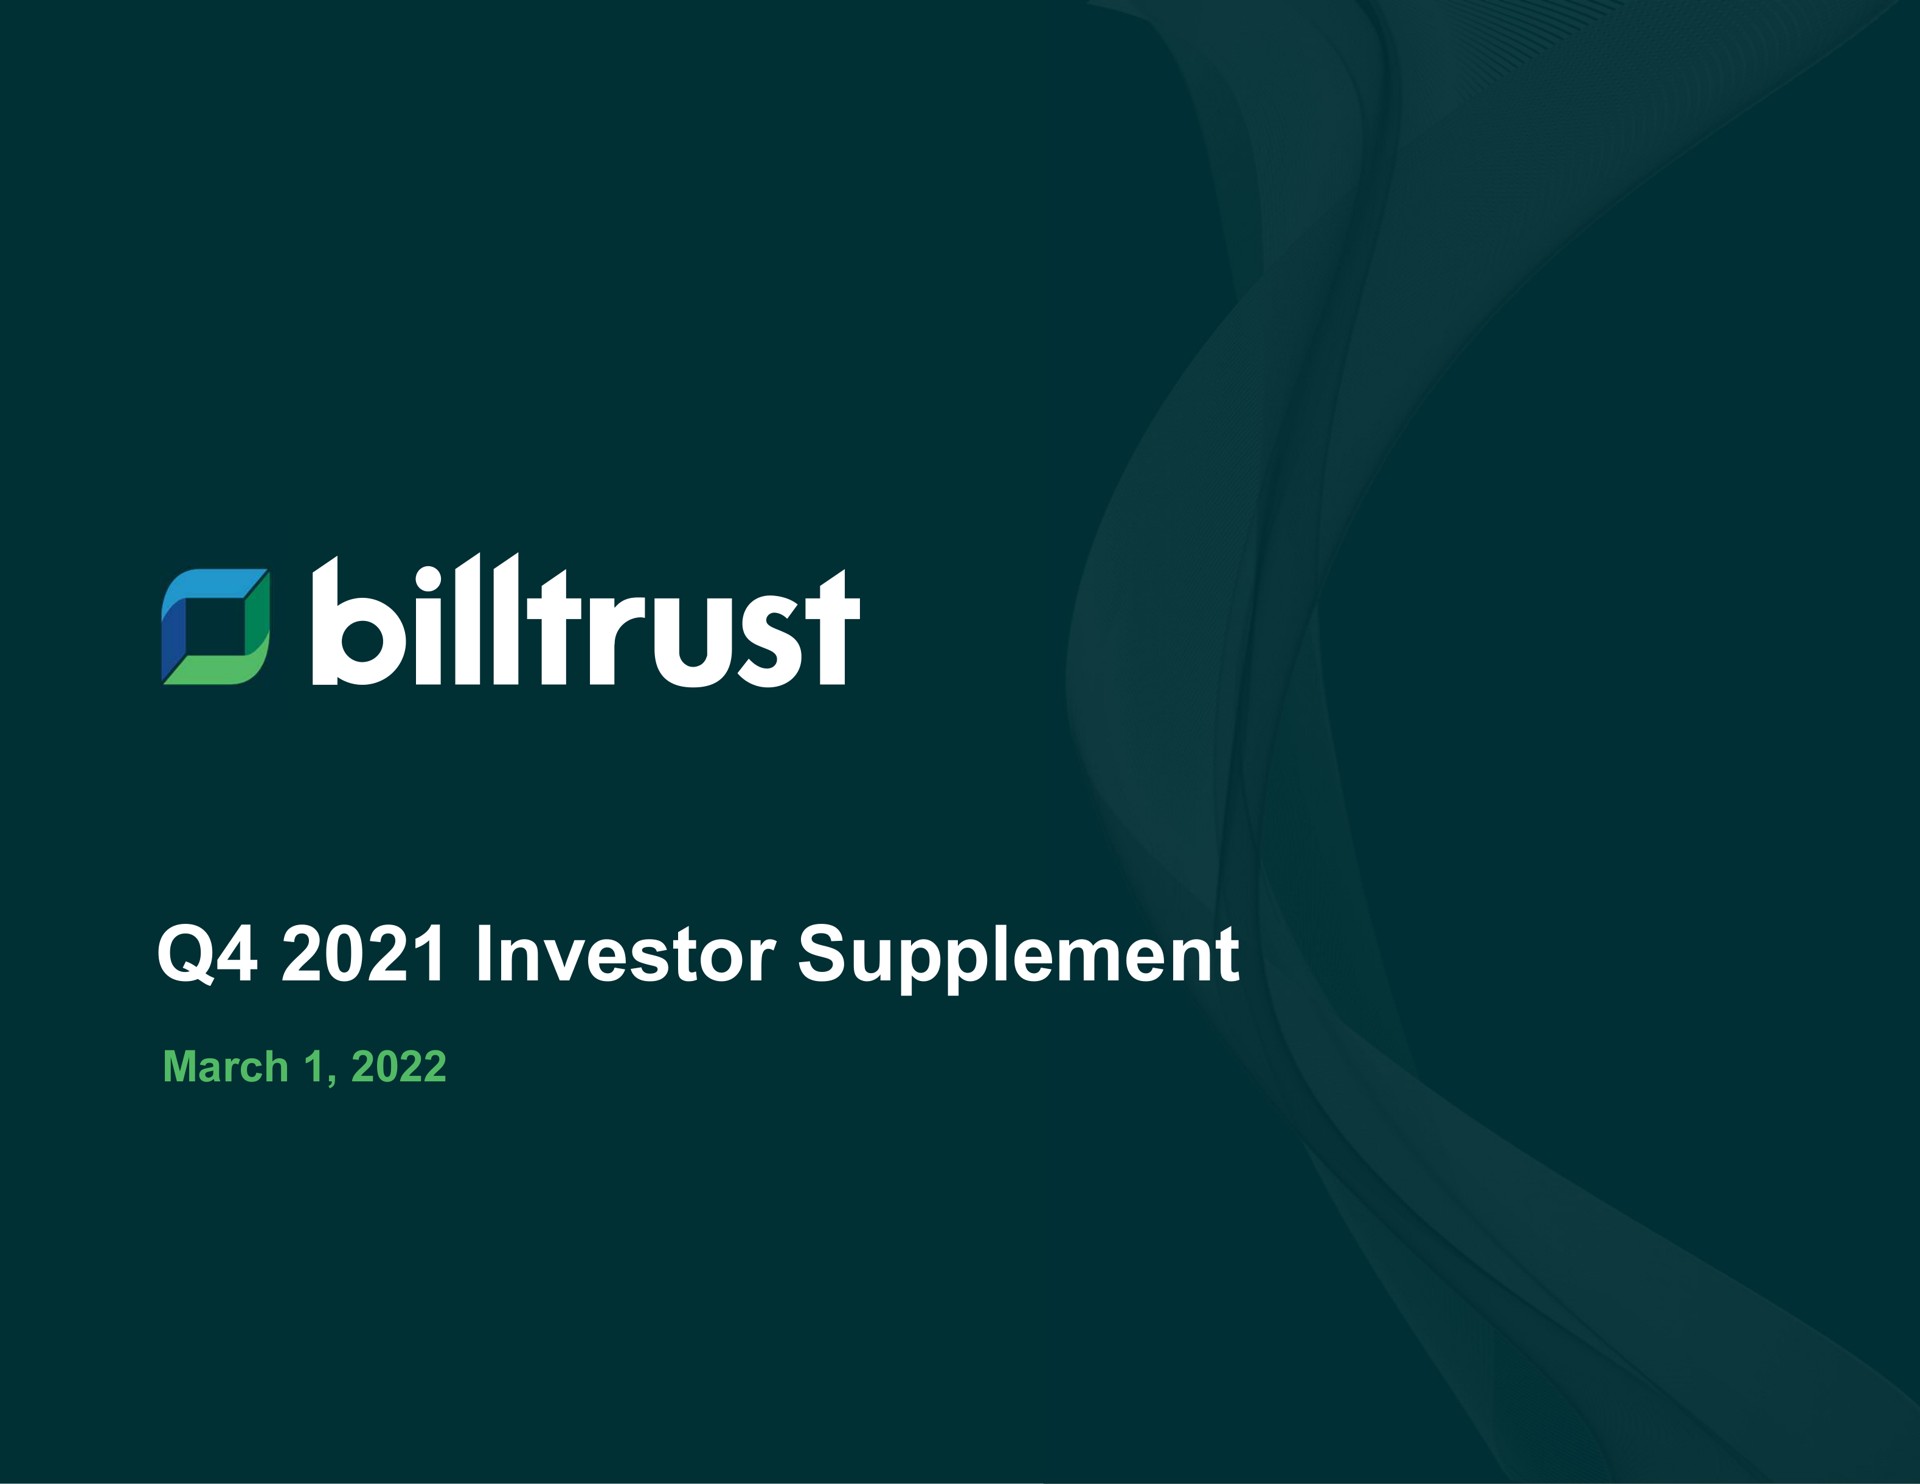 investor supplement an aes | Billtrust